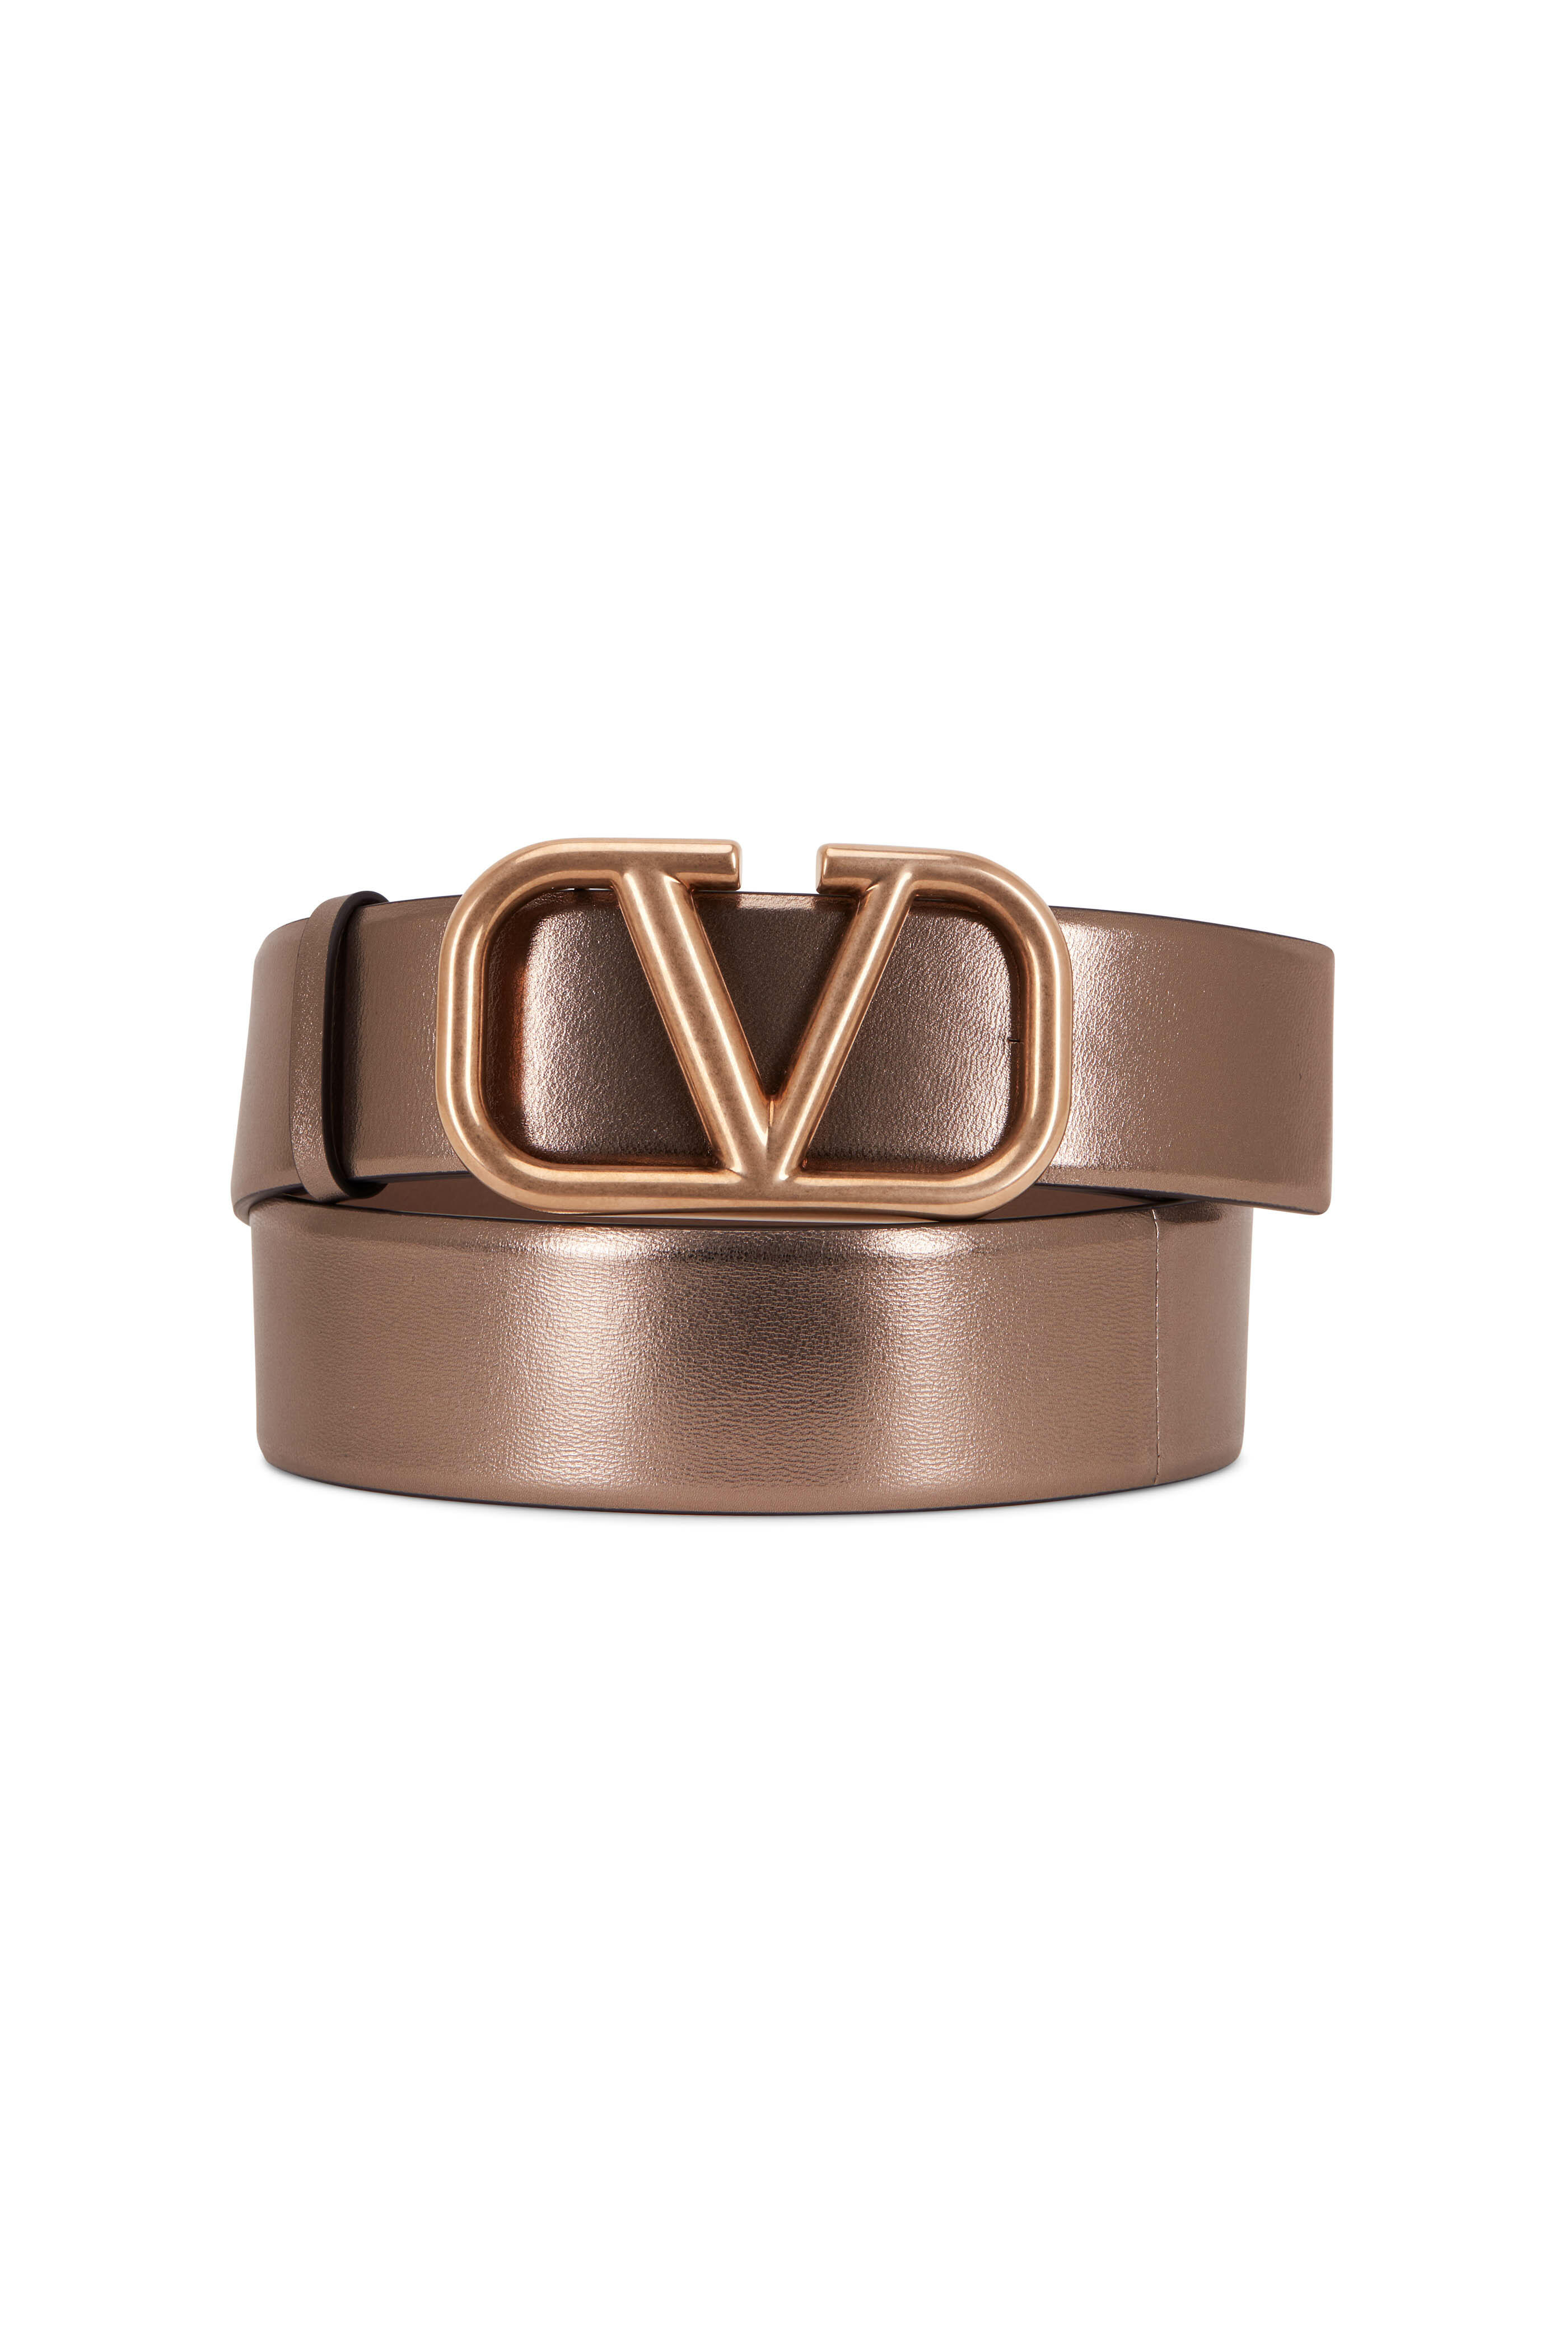 Valentino Garavani Leather Logo Belt - Brown - 95